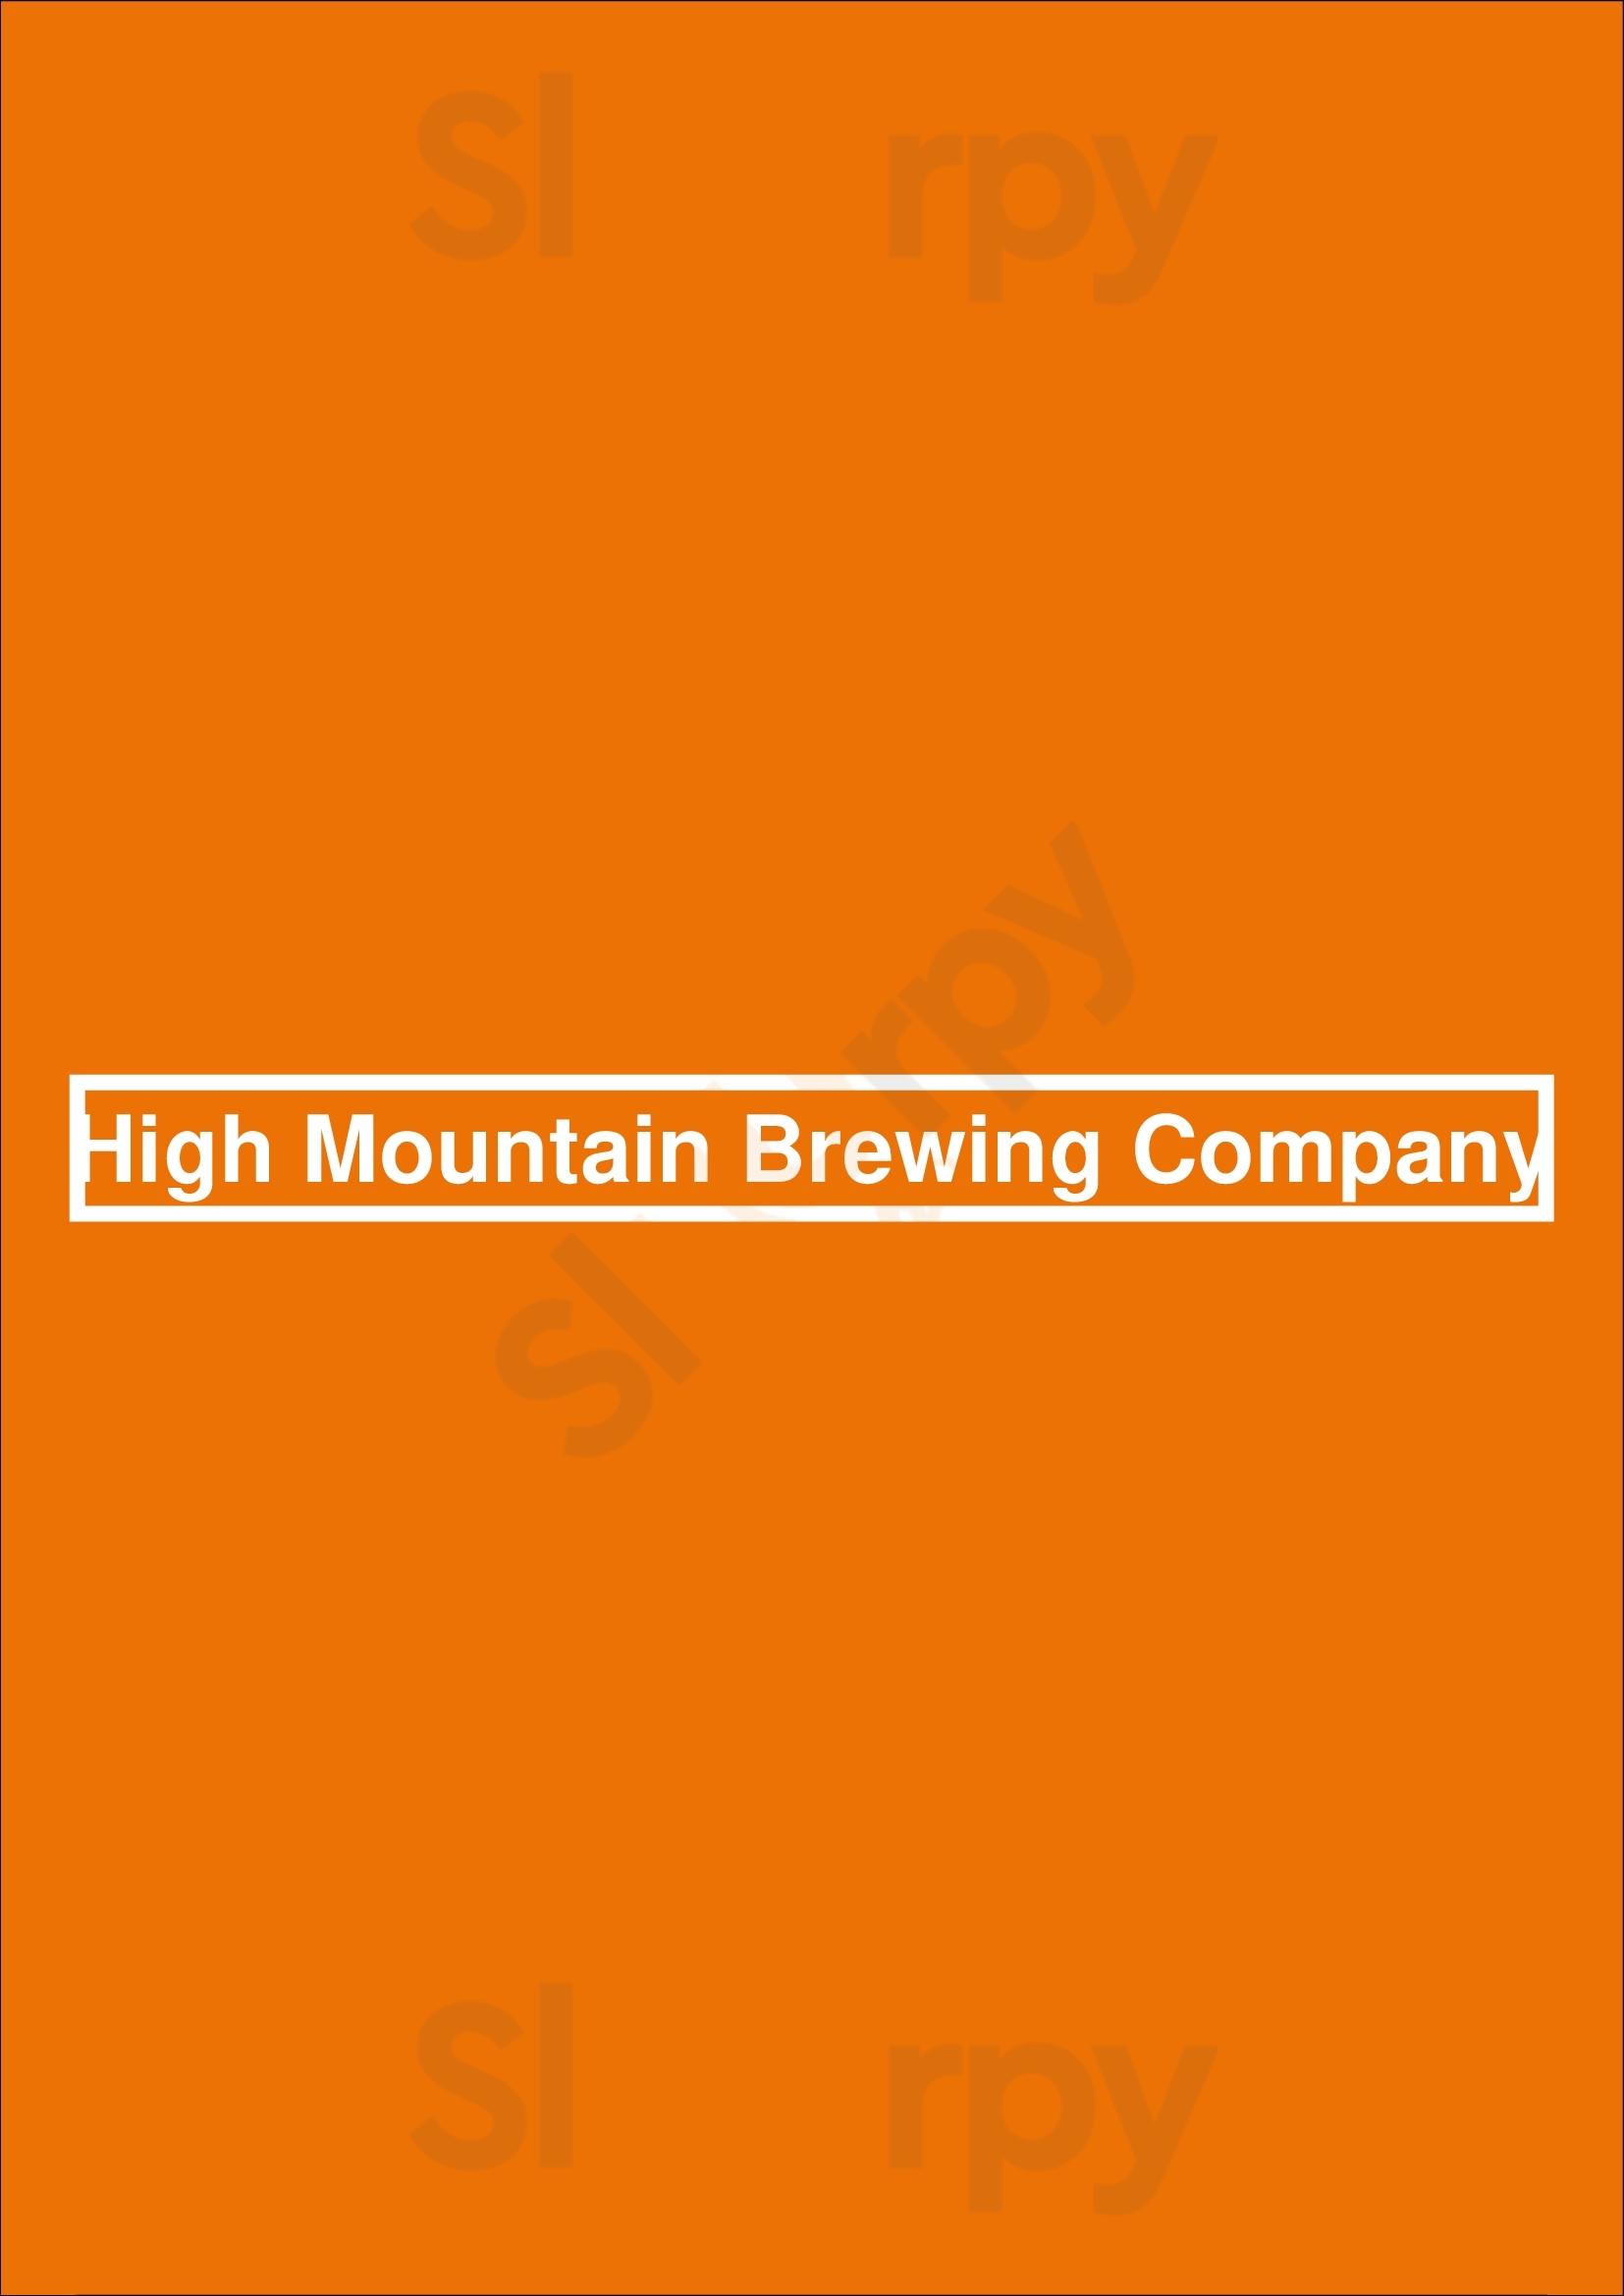 High Mountain Brewing Company Whistler Menu - 1